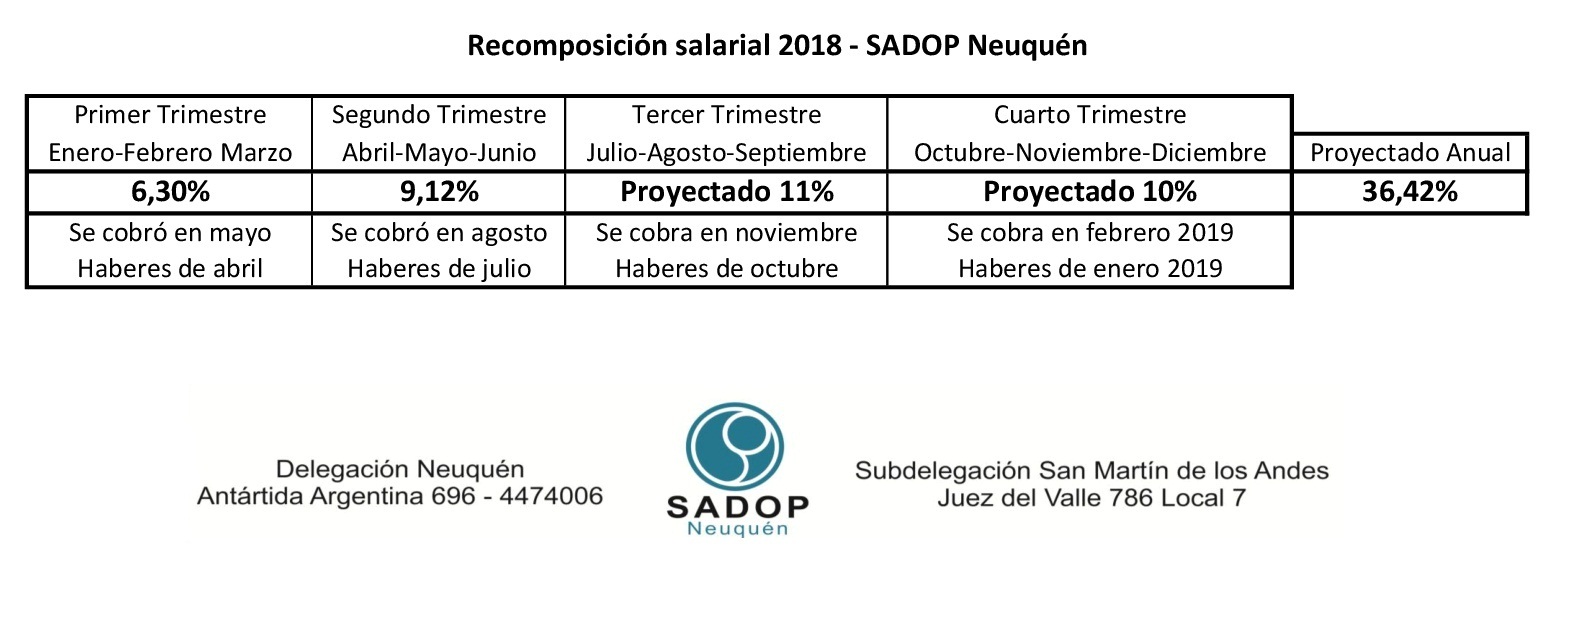 En este momento estás viendo Recomposición Salarial 2018- Sadop Neuquén